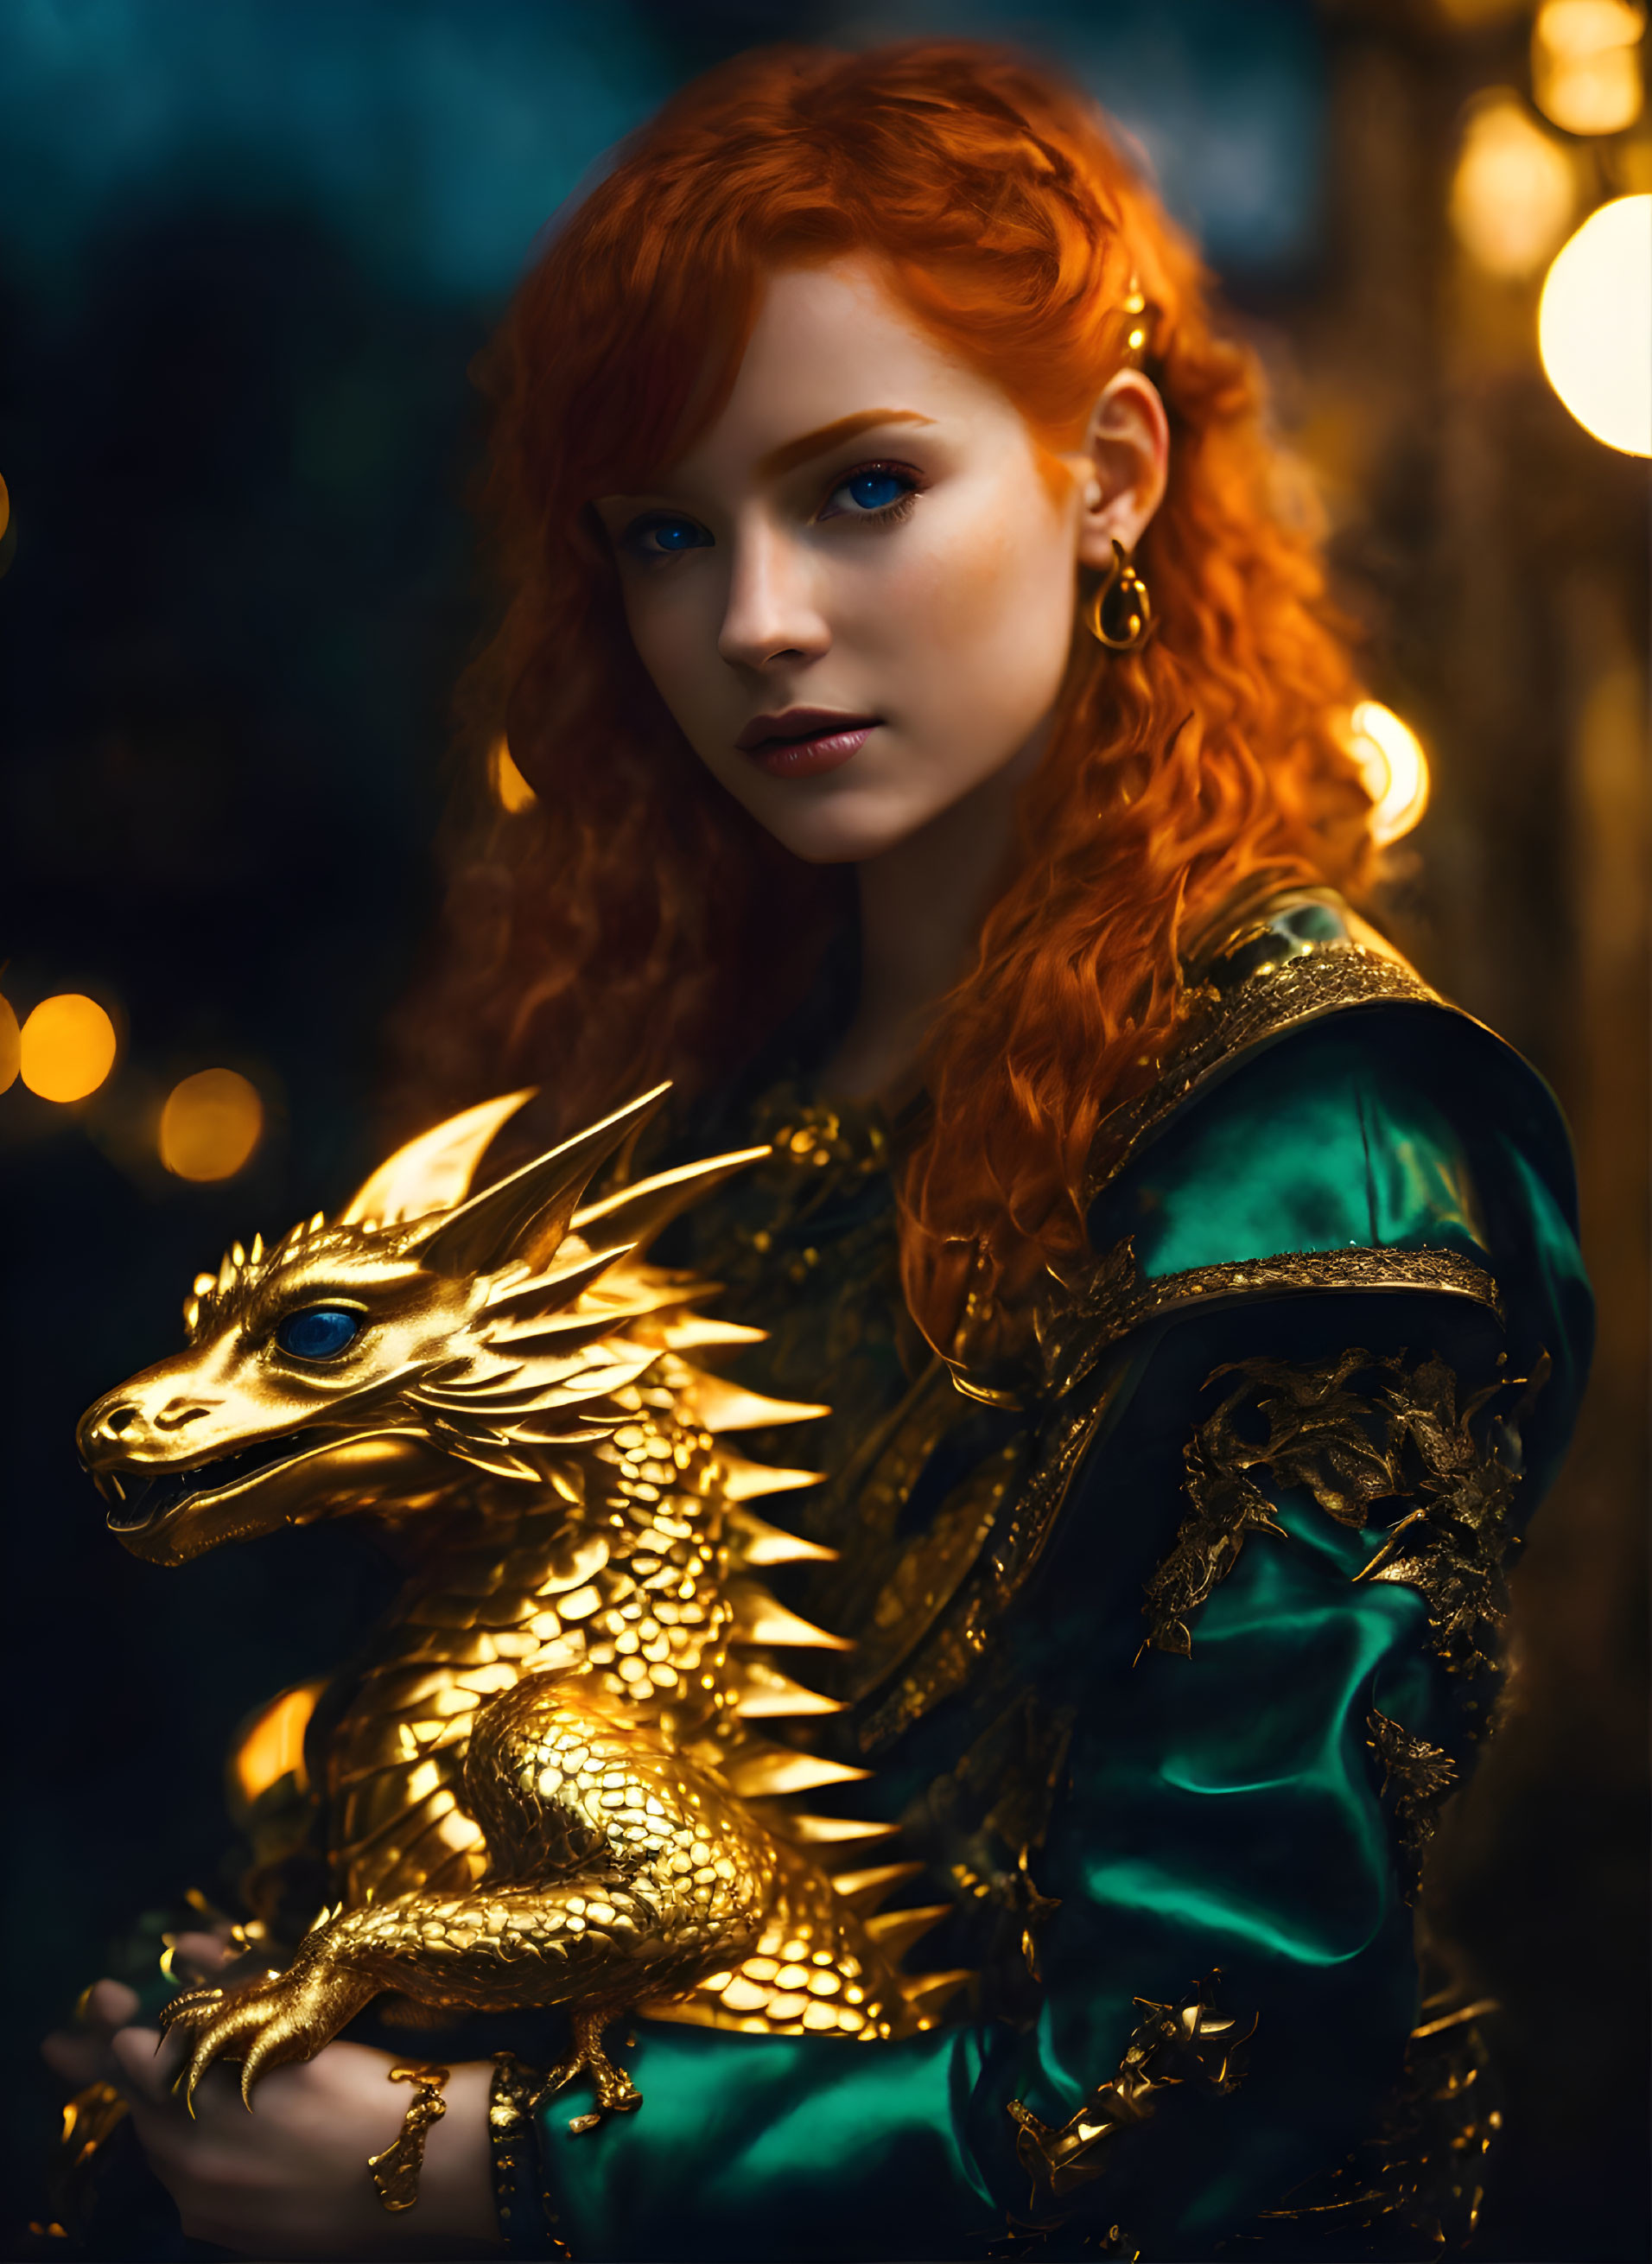 Dragon girl